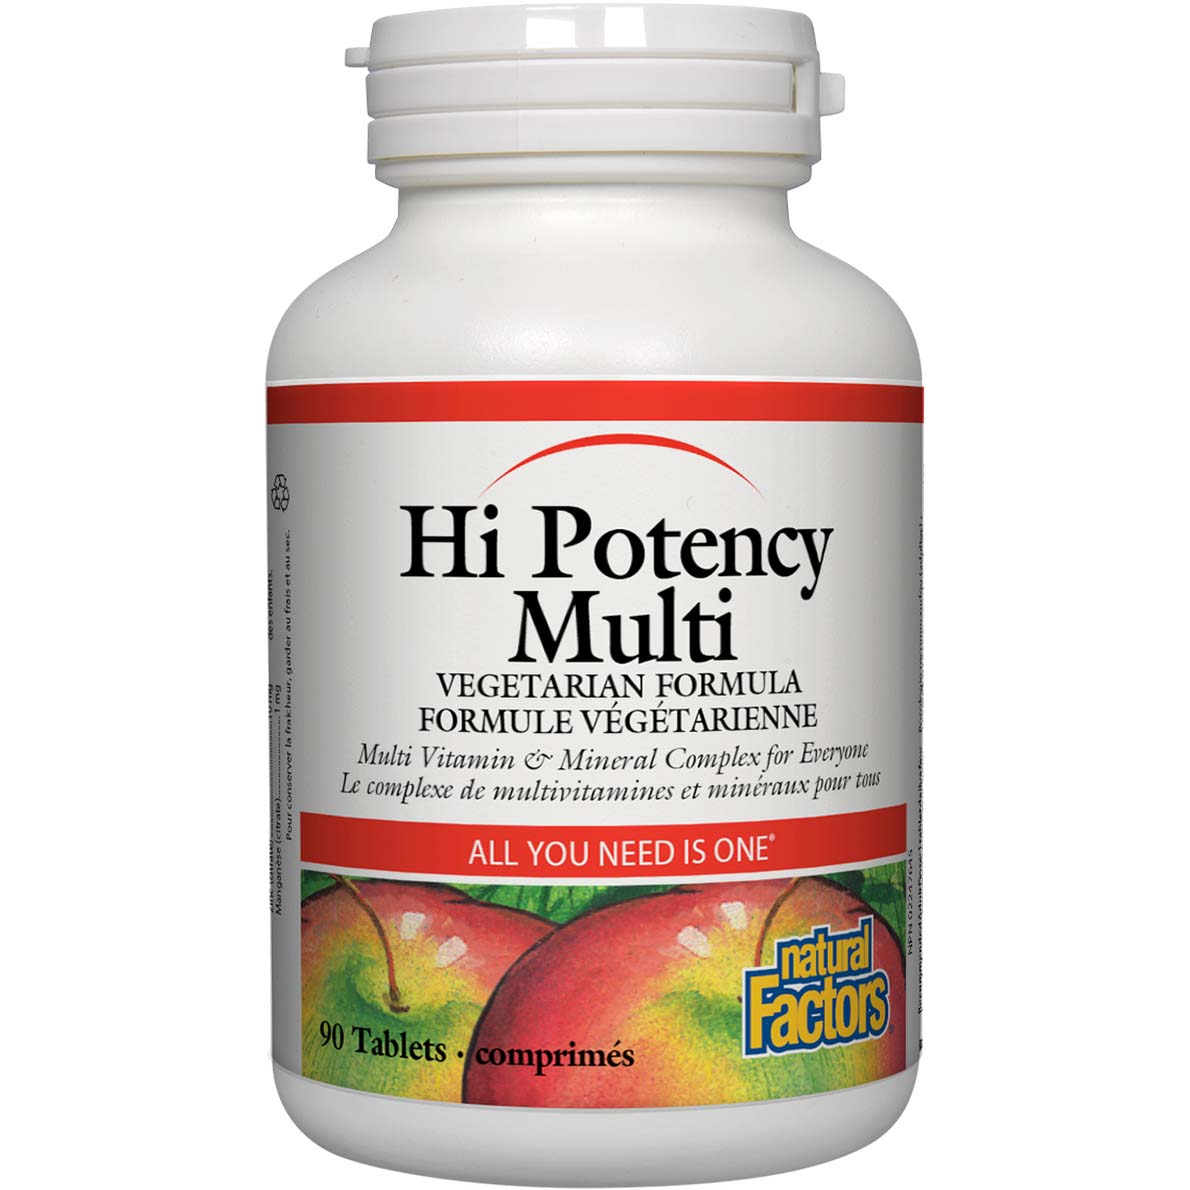 Natural Factors Hi Potency Multi, 90 Tablets